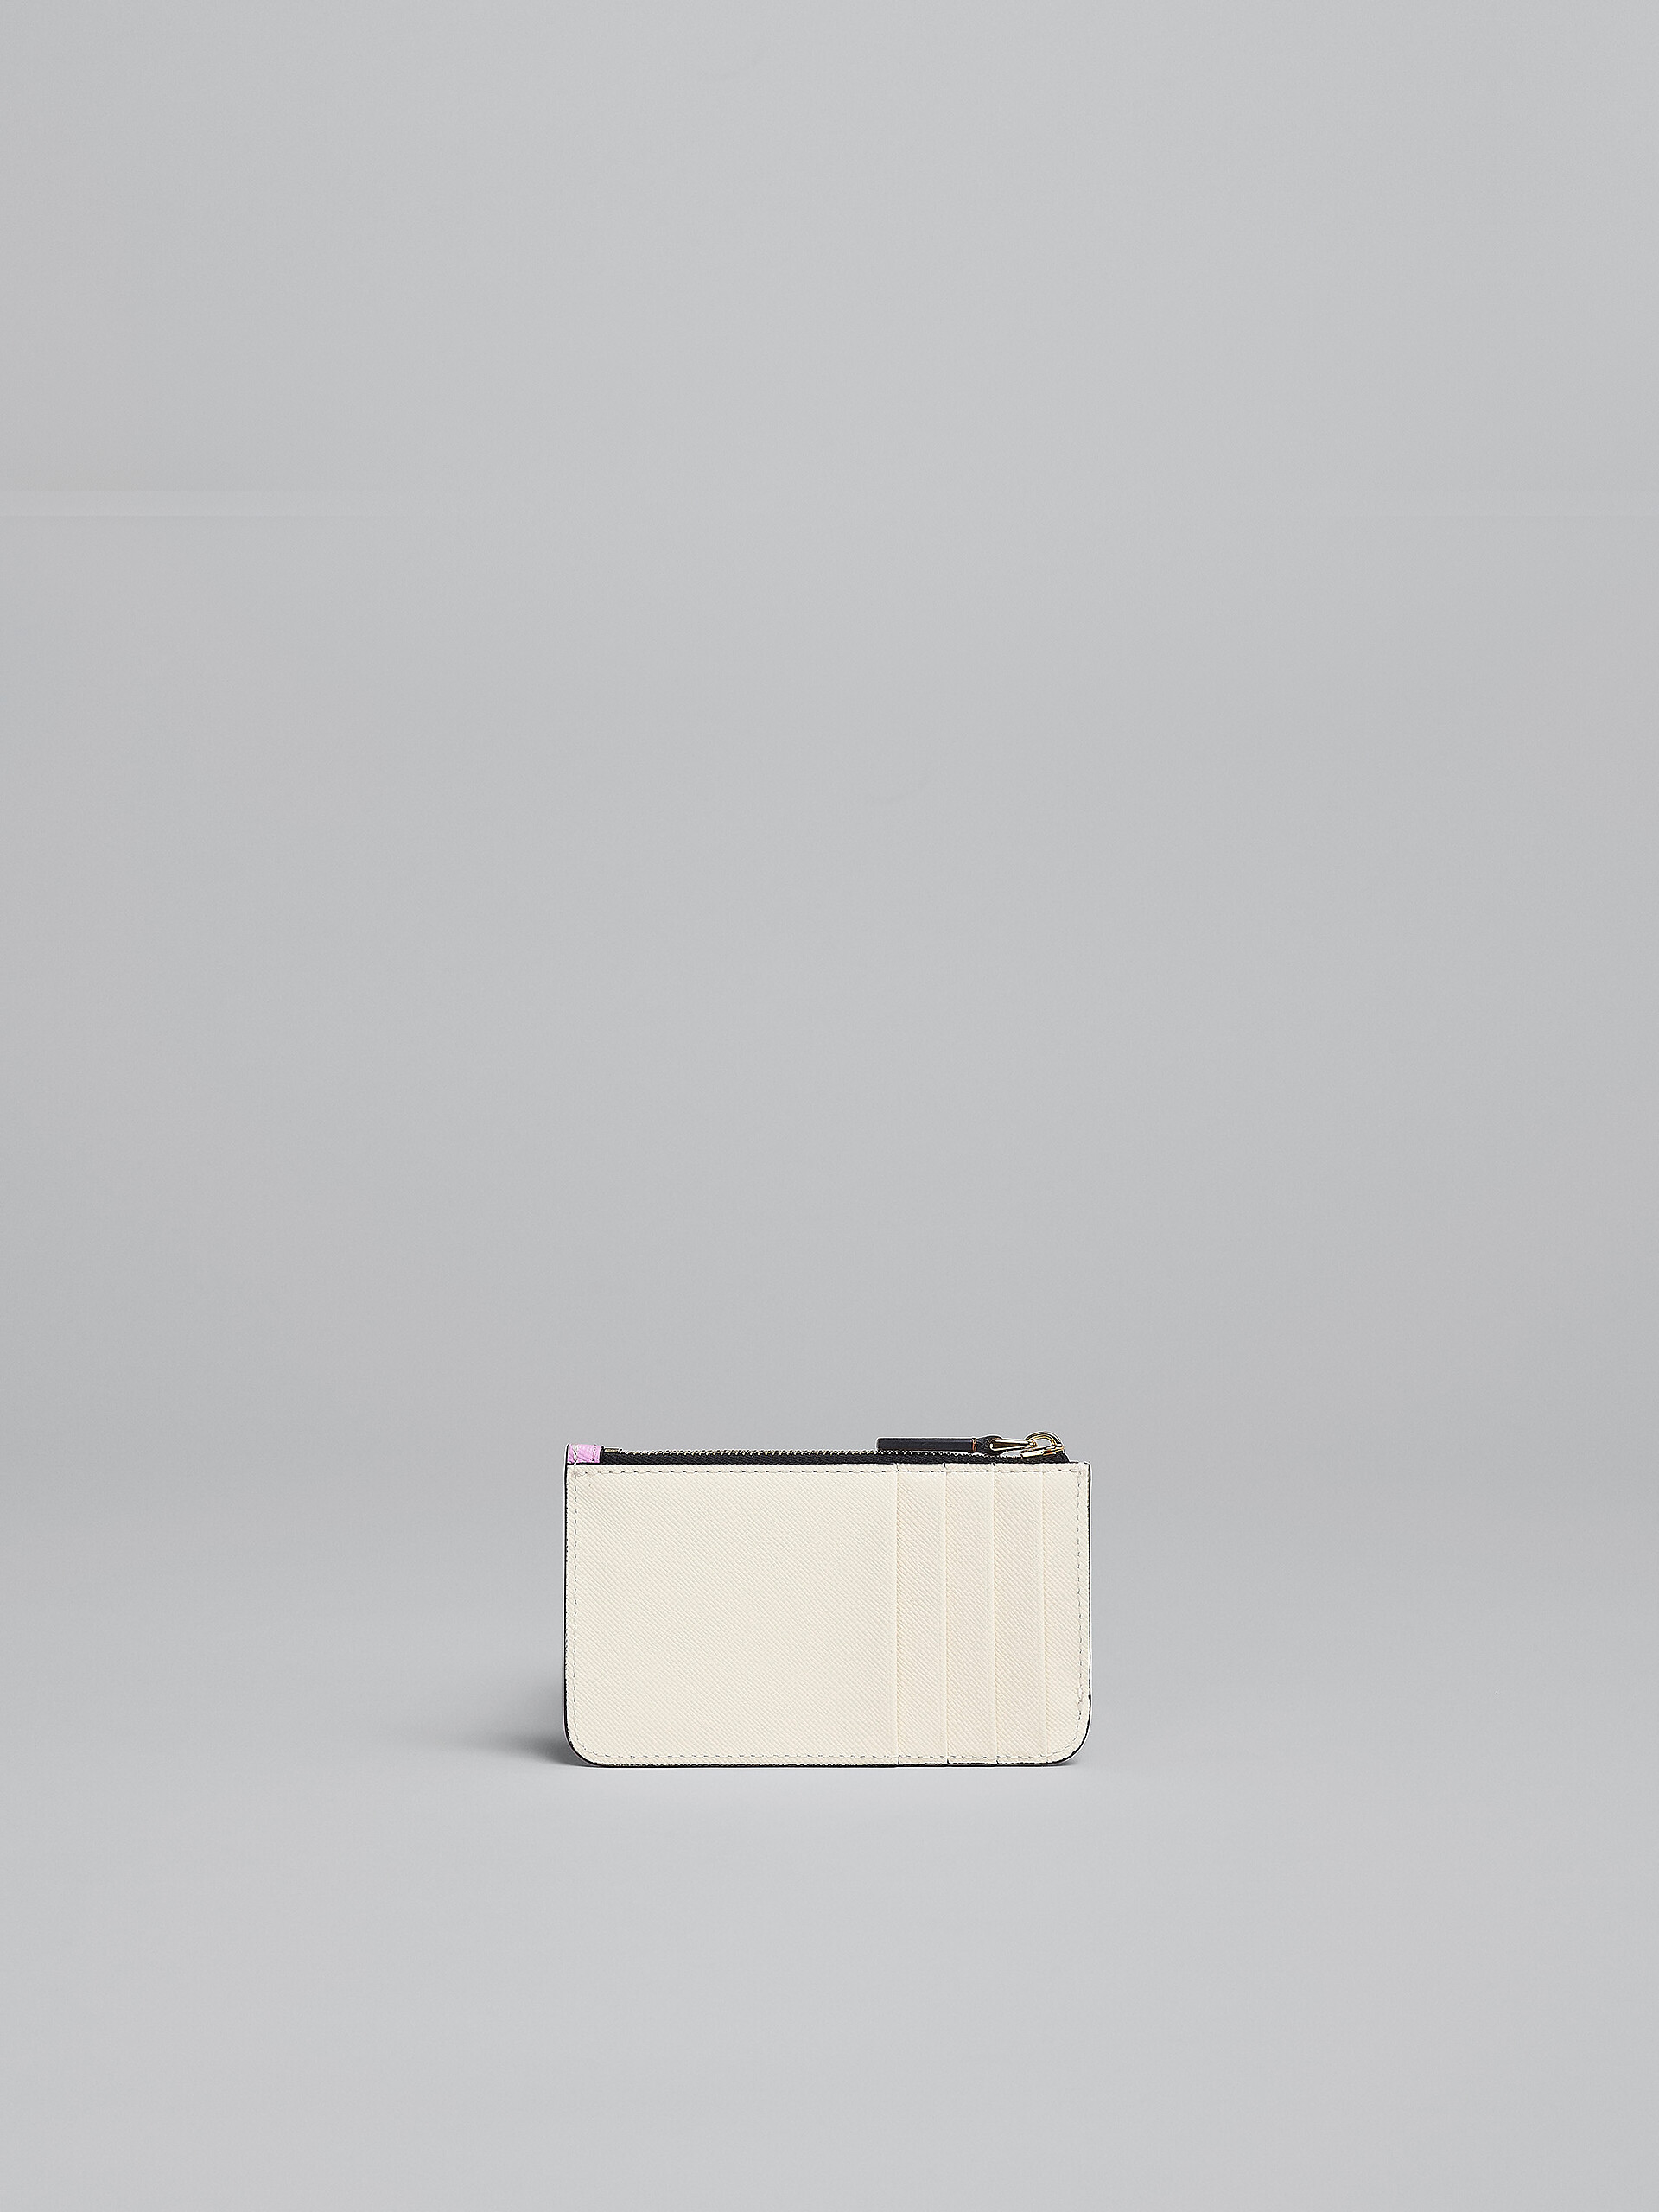 Kartenetui aus Saffiano-Leder in Braun, Rosa und Weiß - Brieftaschen - Image 3